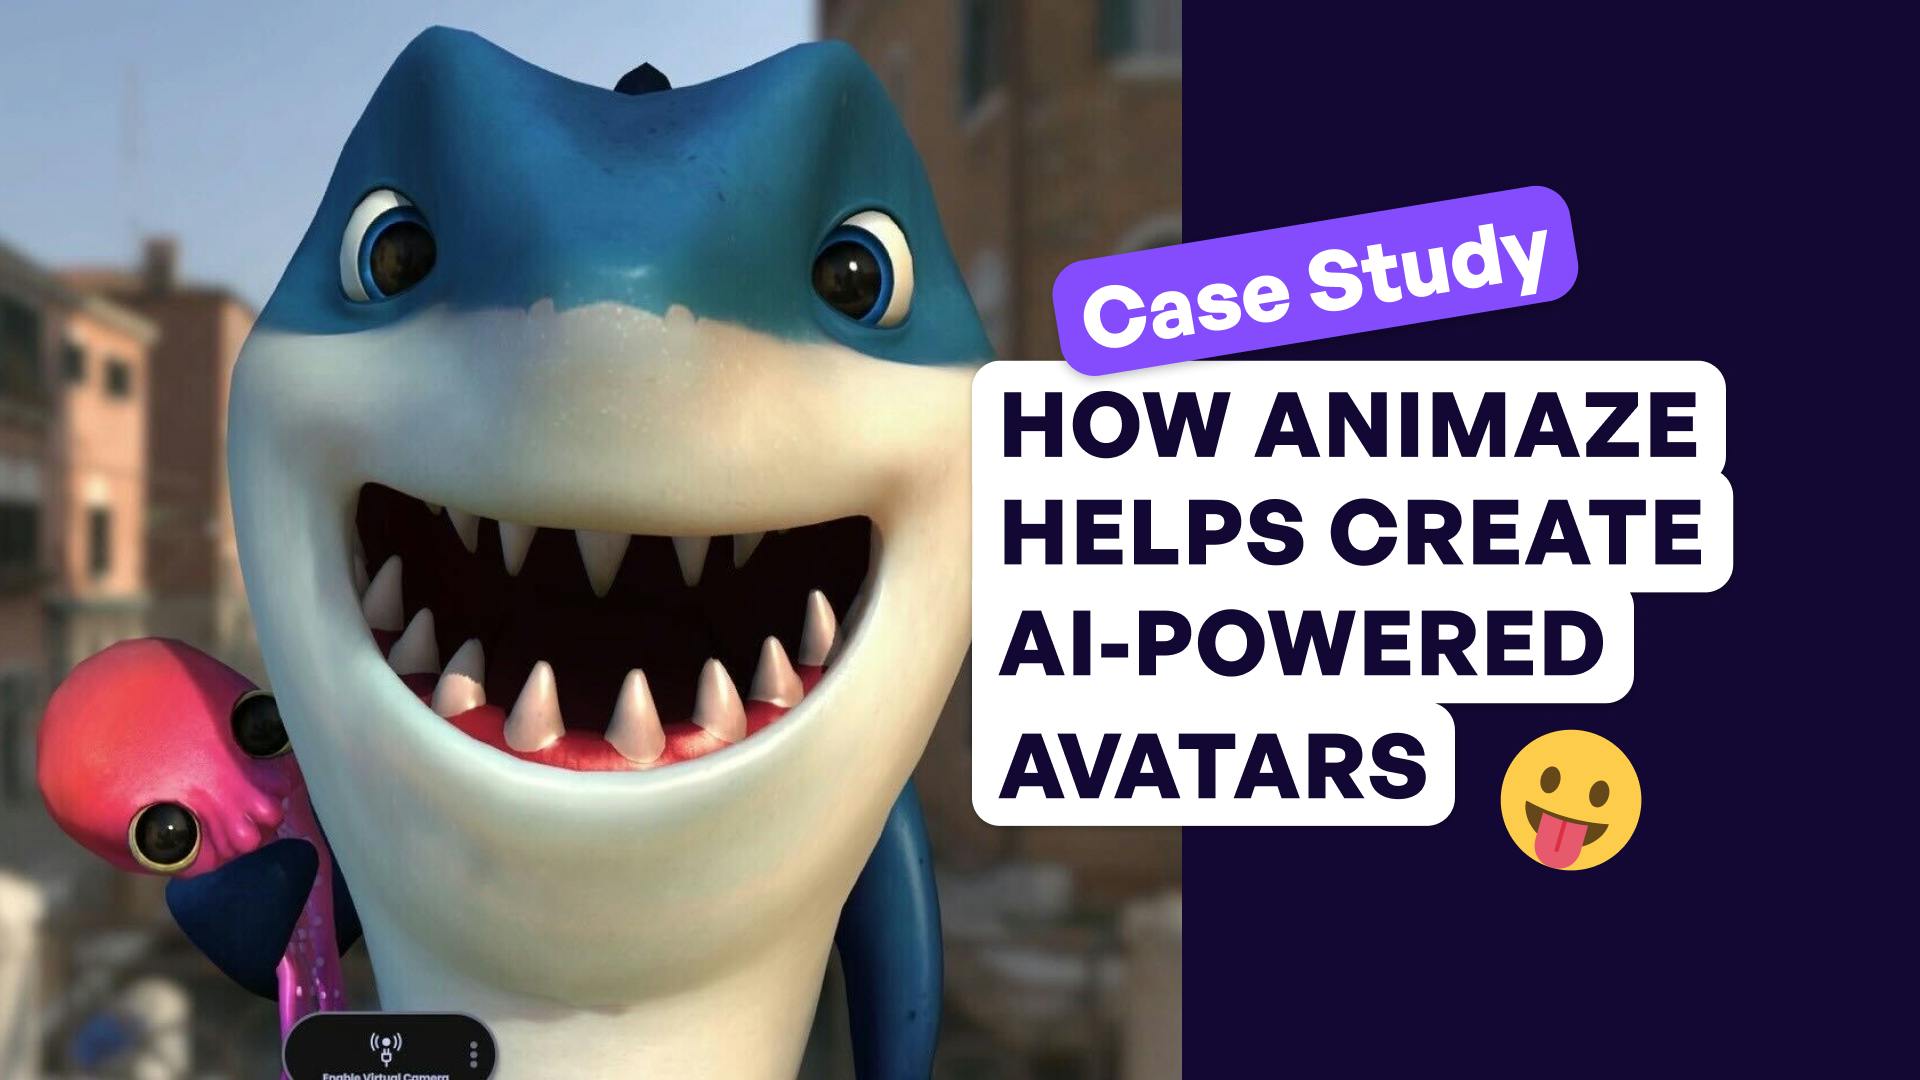 How Animaze Helps create AI-powered avatars with a smiling shark avatar